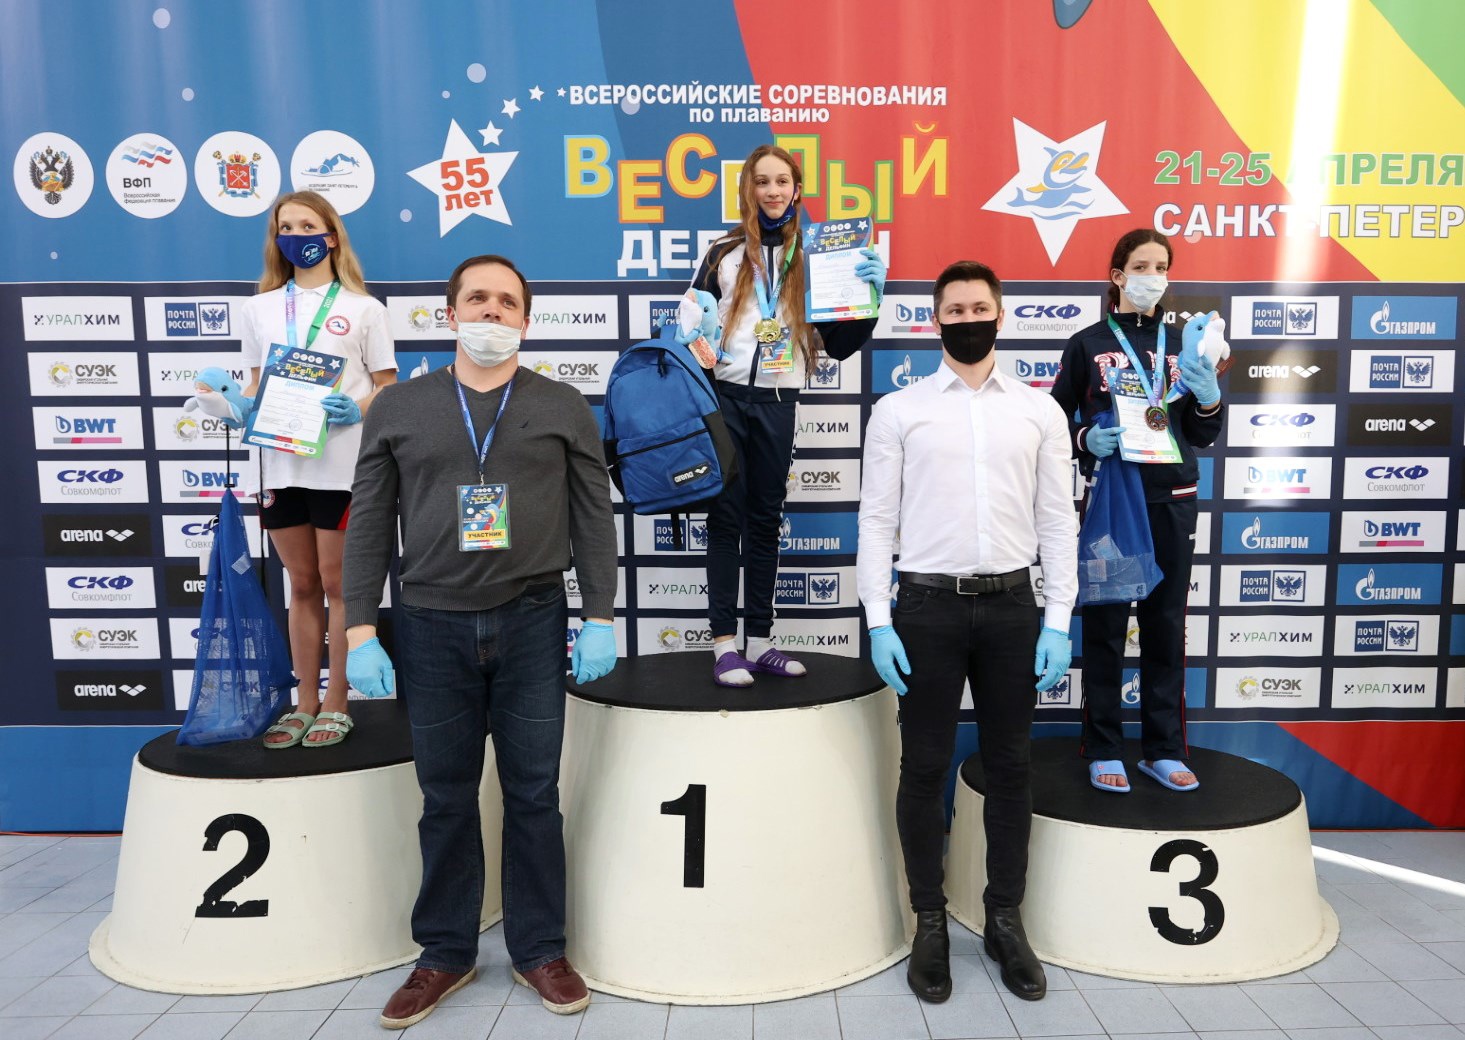 Поздравляем Софью Нищук с бронзой на всероссийских соревнованиях по плаванию